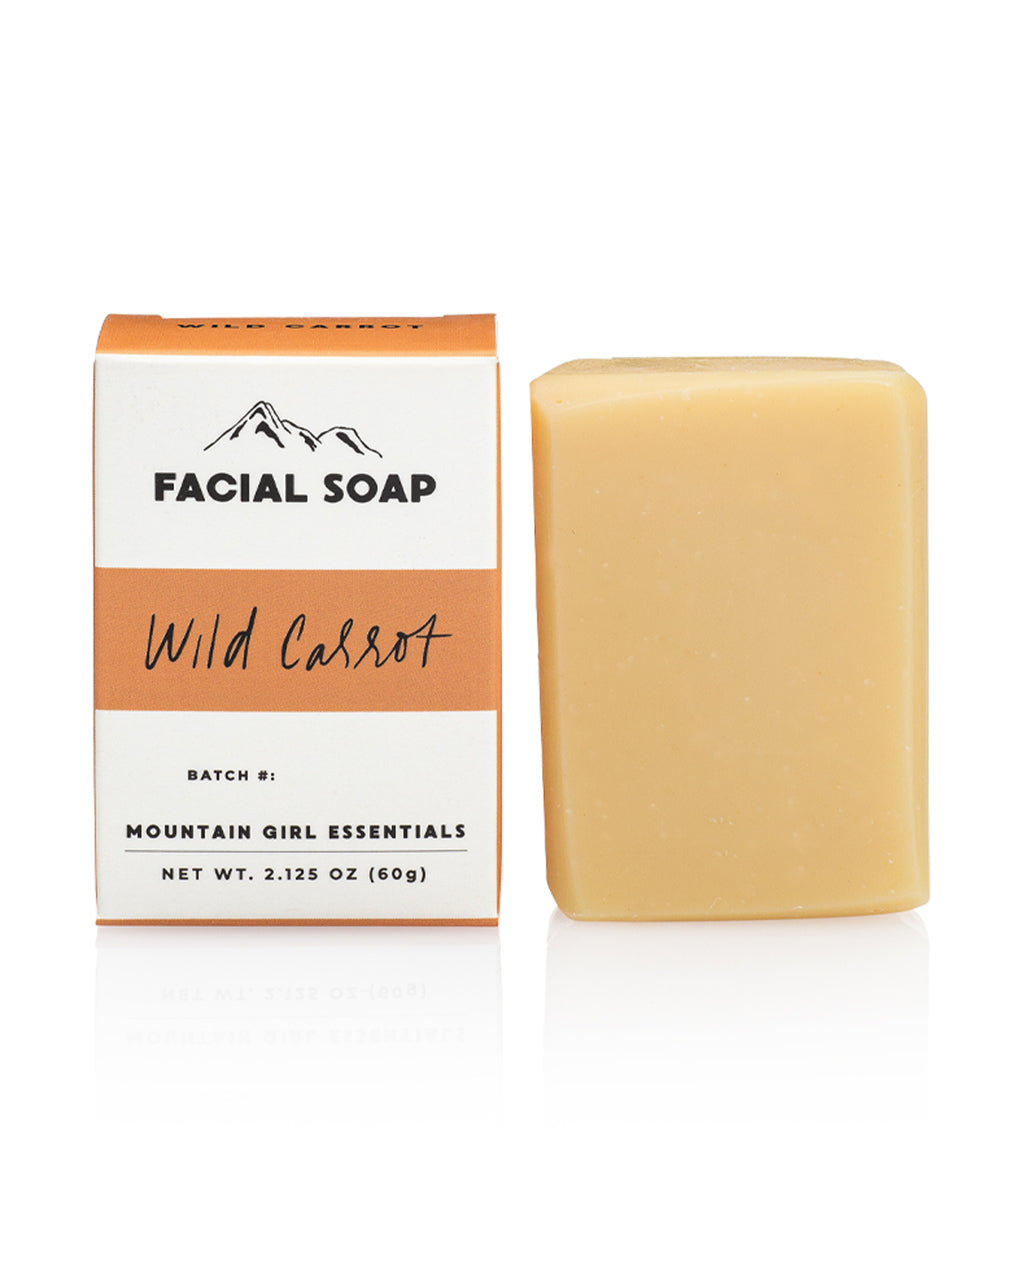 Wild Carrot Facial Soap Bar